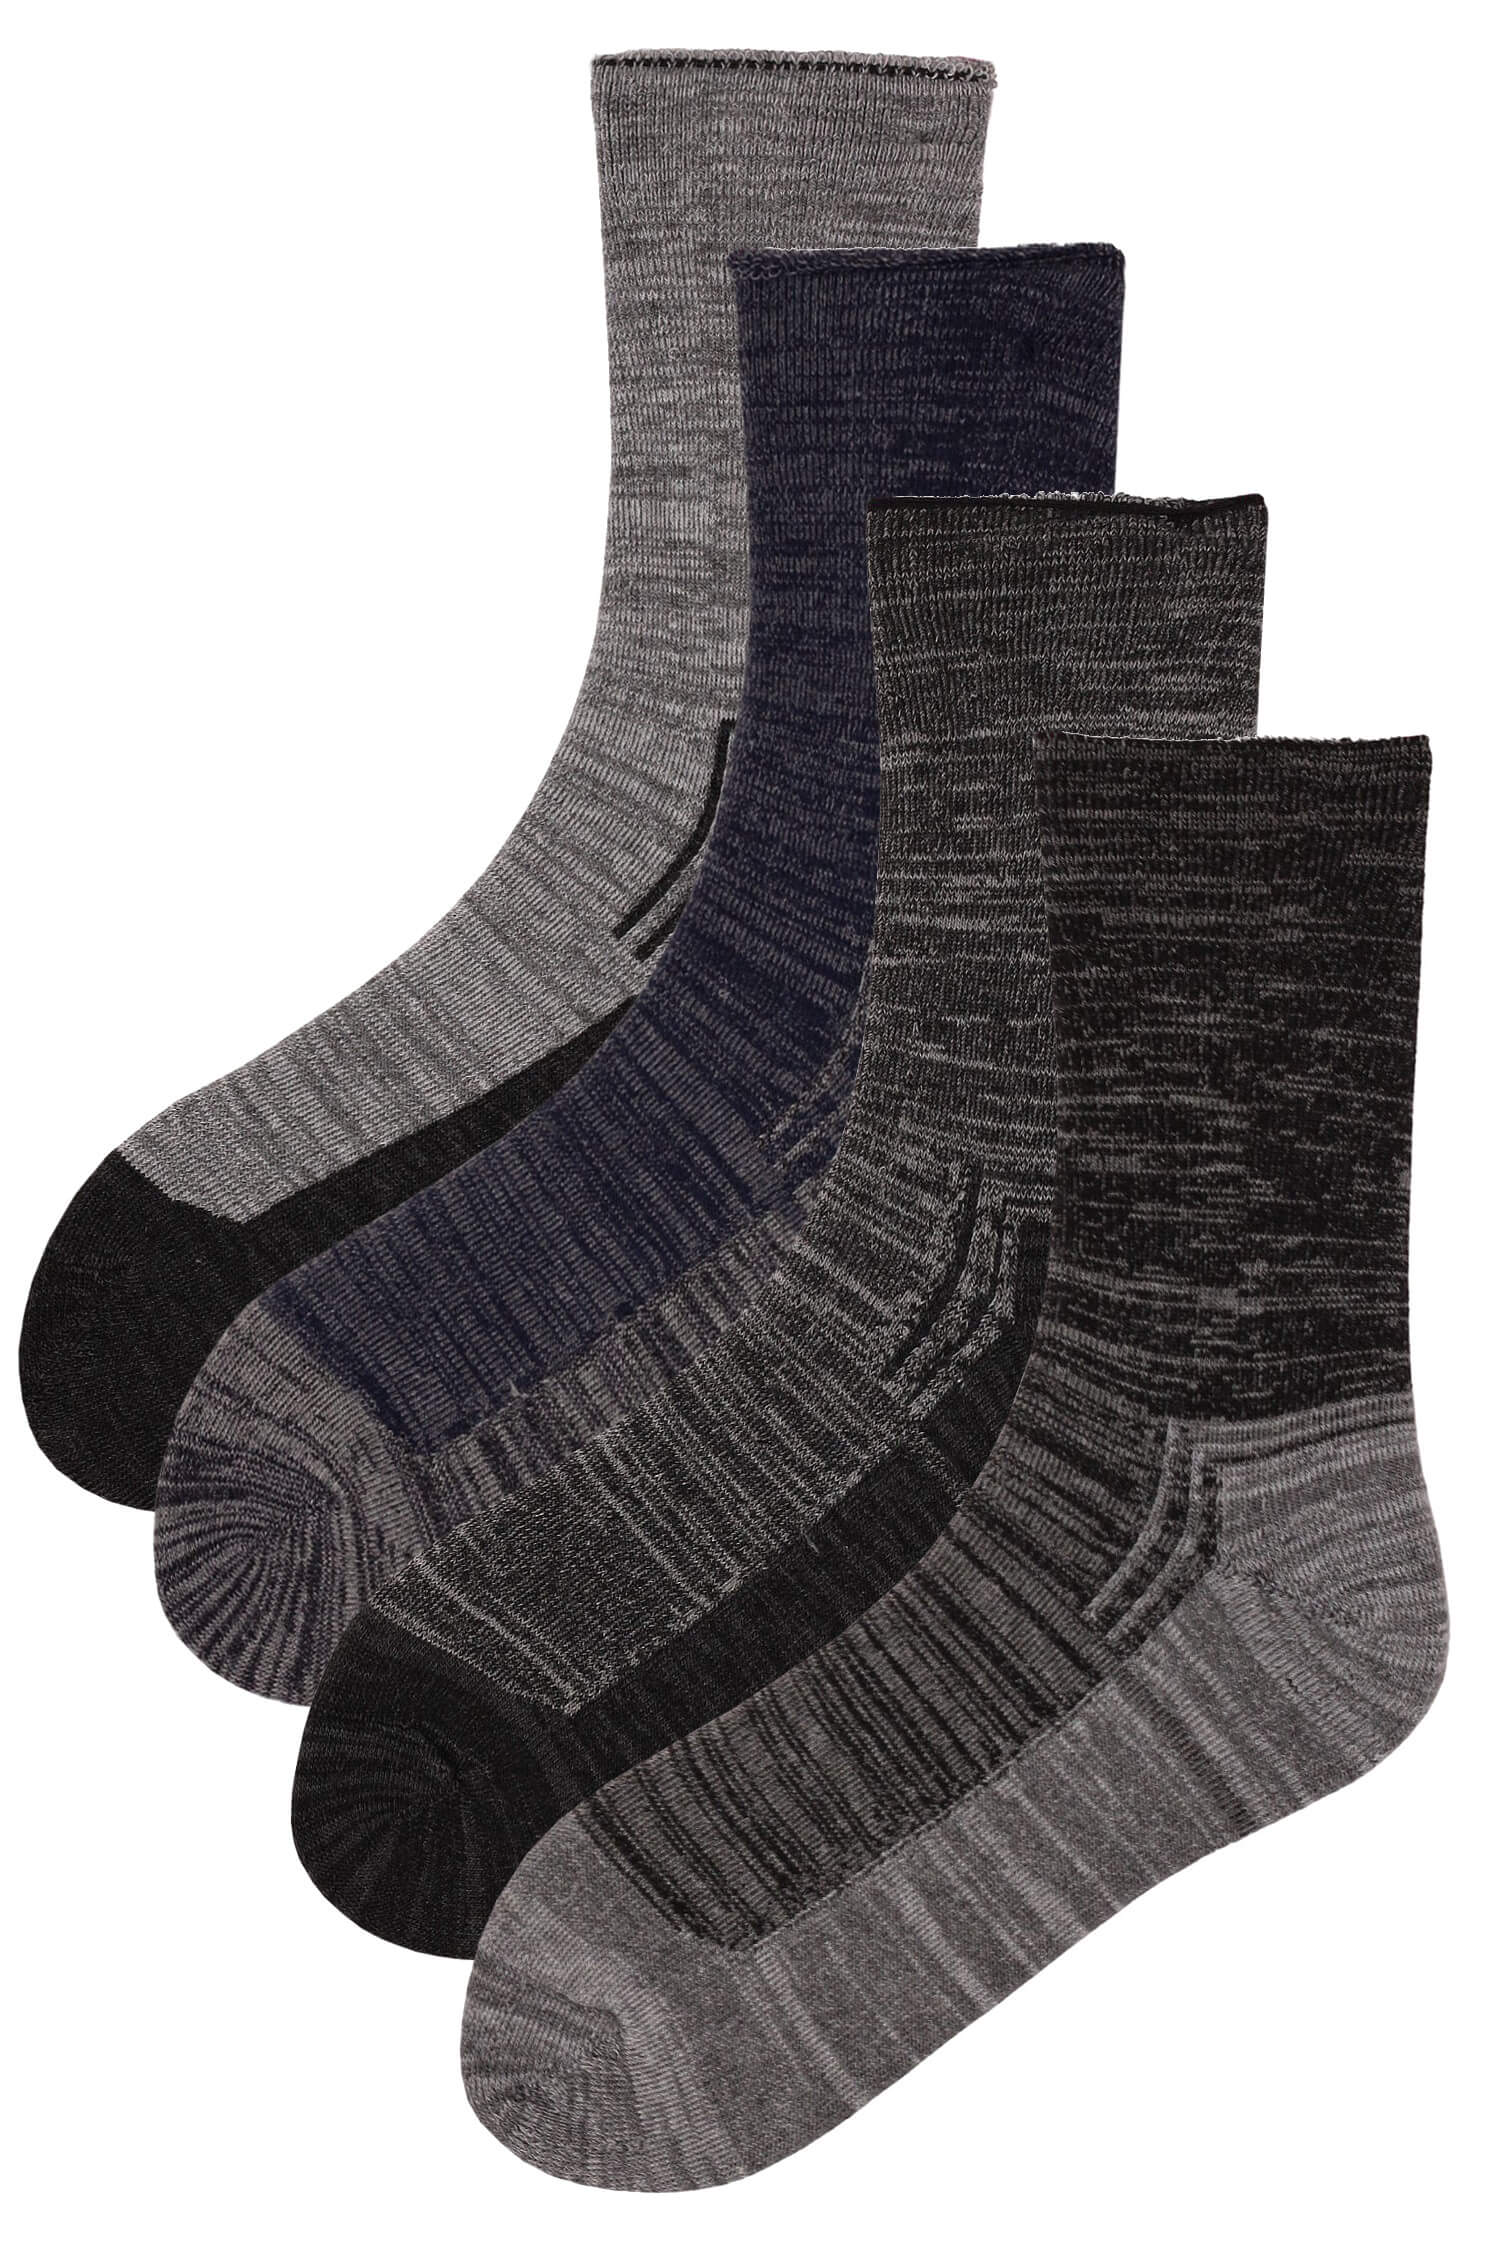 Pánské ponožky thermo bavlna SSM74 - 2 páry 40-44 vícebarevná